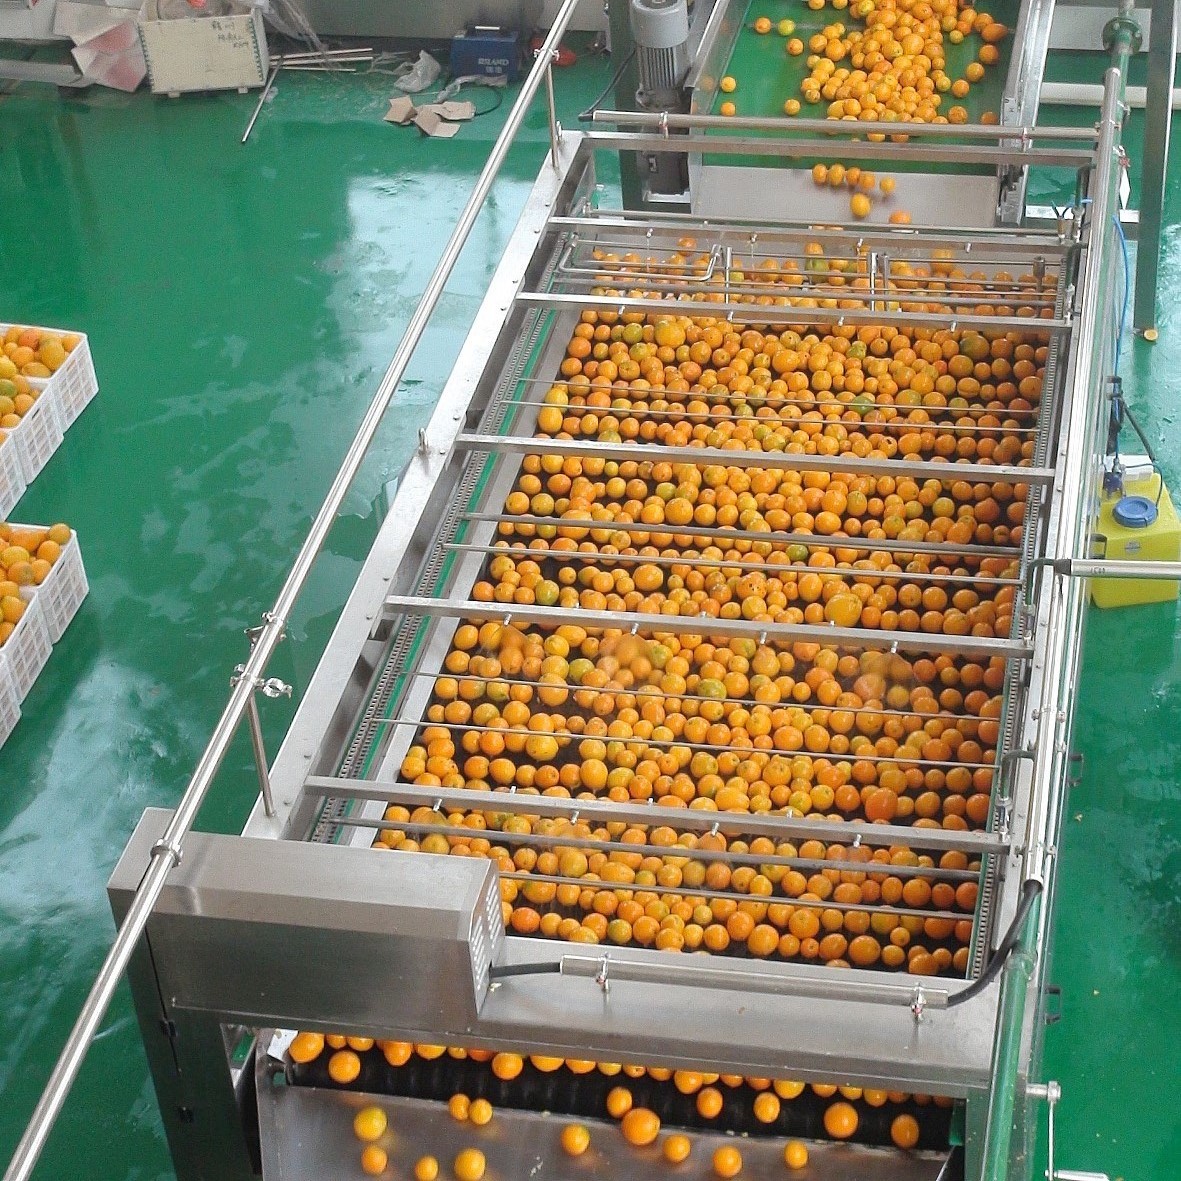 Línea de producción de jugo de naranja